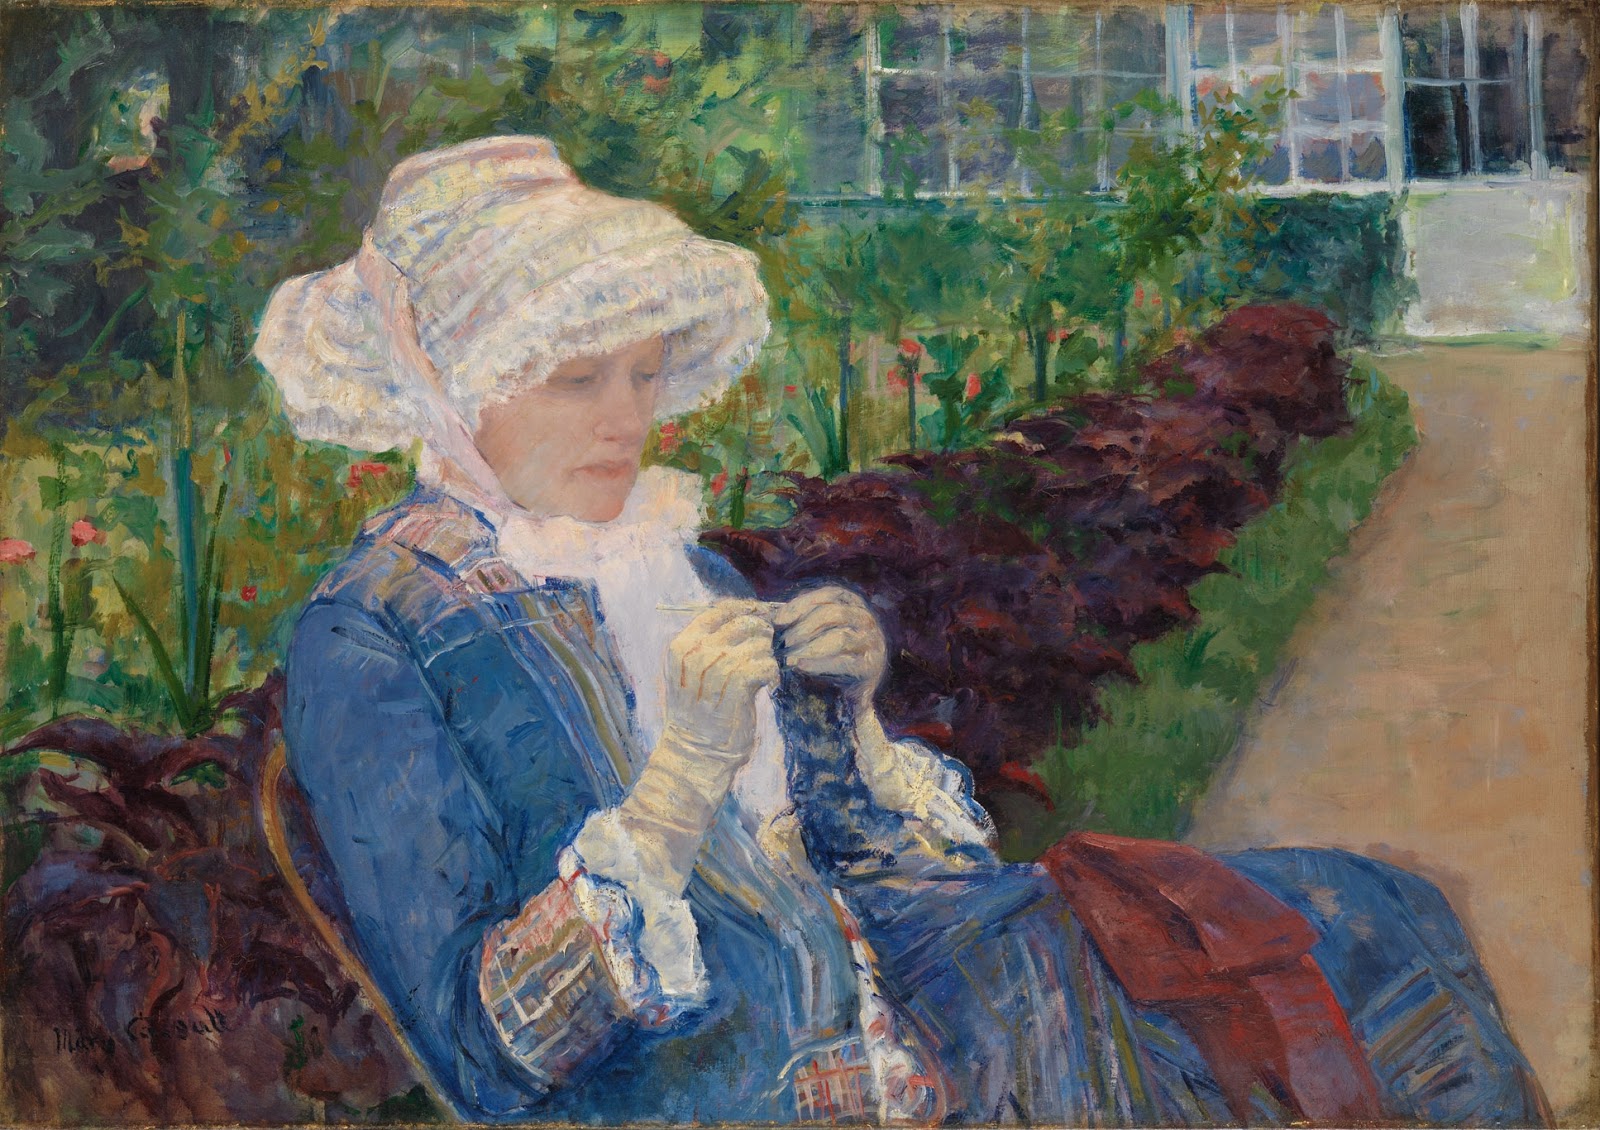 Mary+Cassatt-1844-1926 (201).jpg